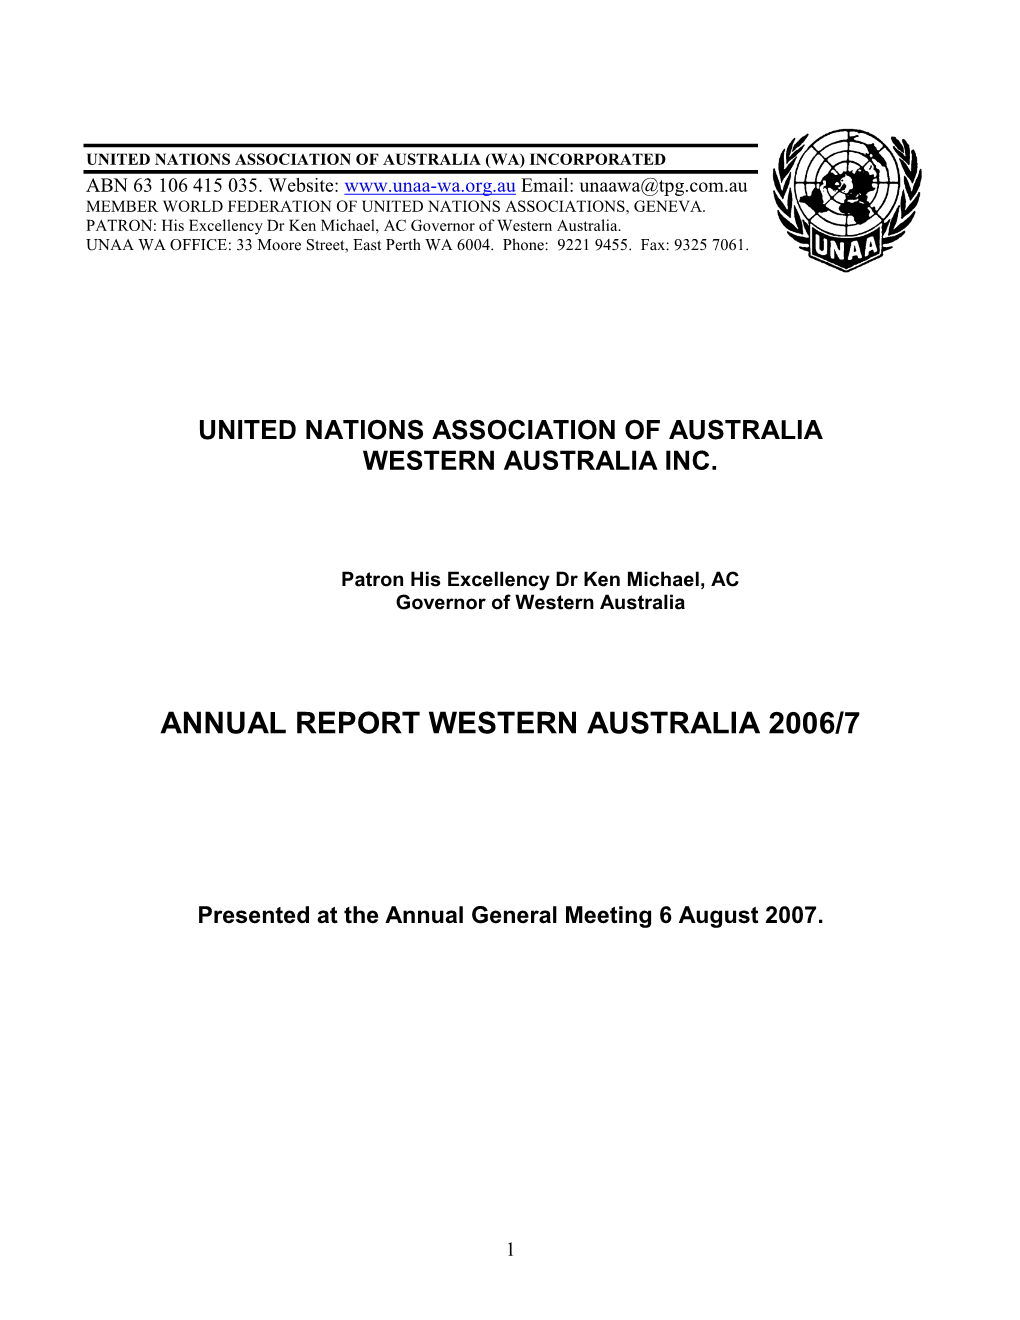 WA Annual Report 2006-2007